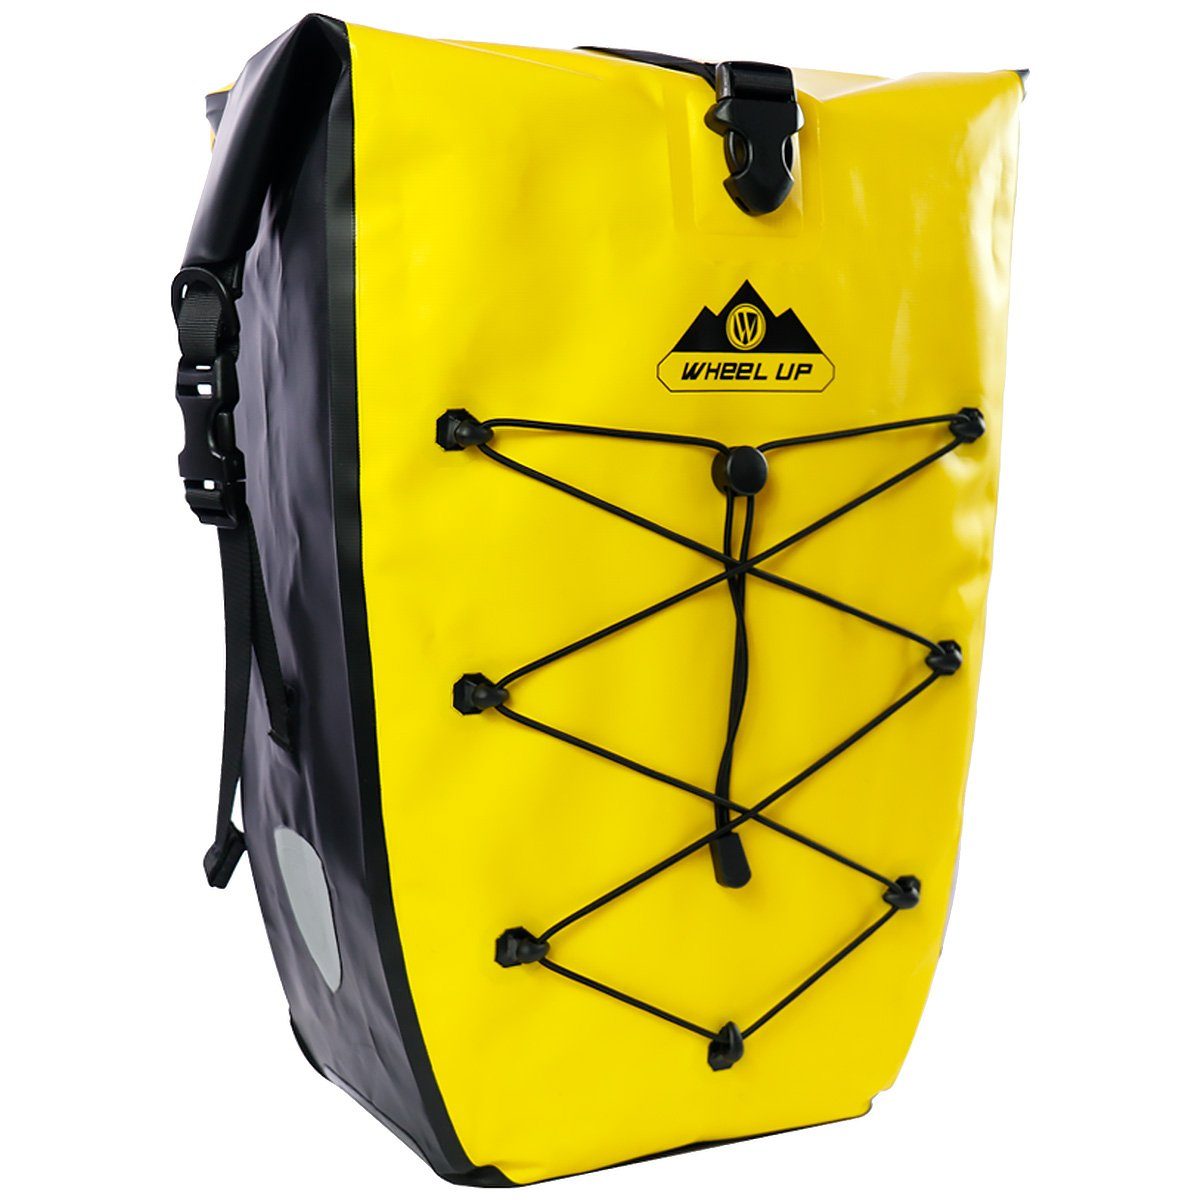 MidGard Gepäckträgertasche Premium-Fahrrad-Tasche für Gepäckträger, wasserfeste mit Reflektoren